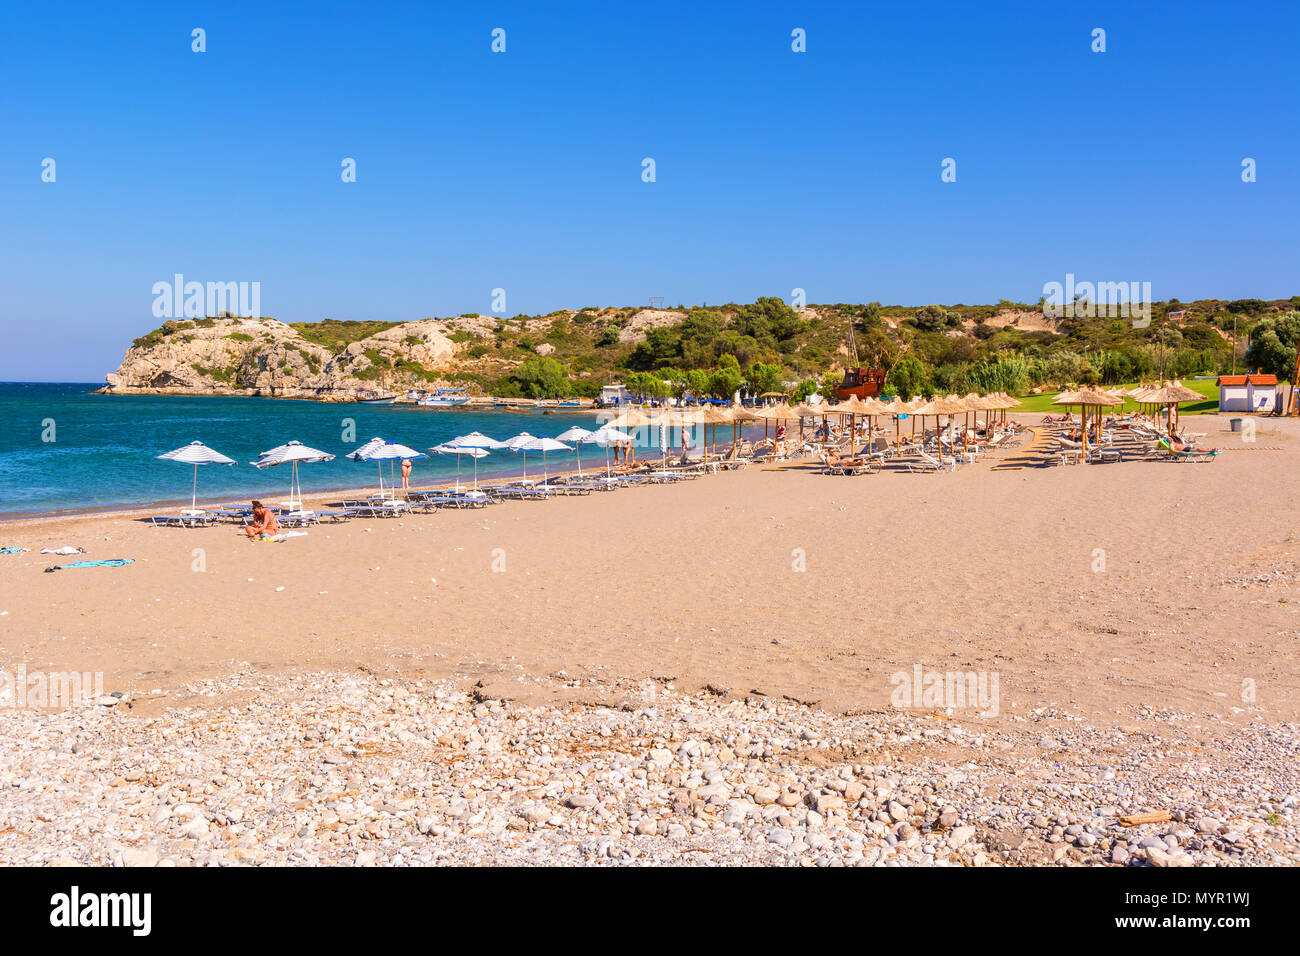 Rodas, Grecia - El 12 de mayo de 2017: Vista de la playa de arena de Hoteles en Kolymbia village en la isla de Rodas. Grecia Foto de stock